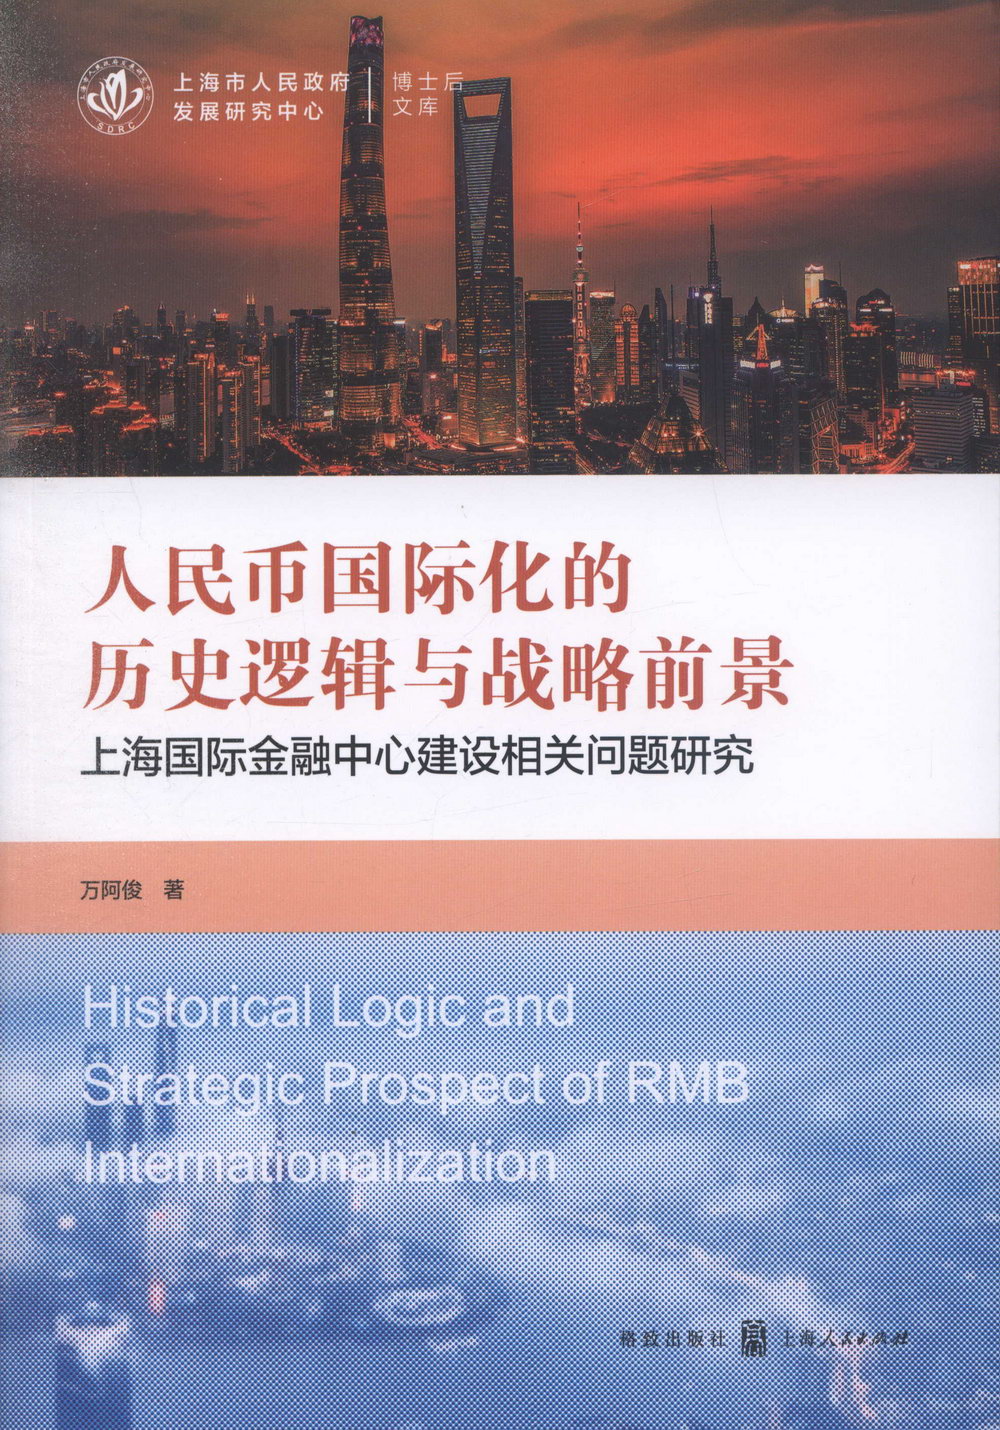 人民幣國際化的歷史邏輯與戰略前景：上海國際金融中心建設相關問題研究